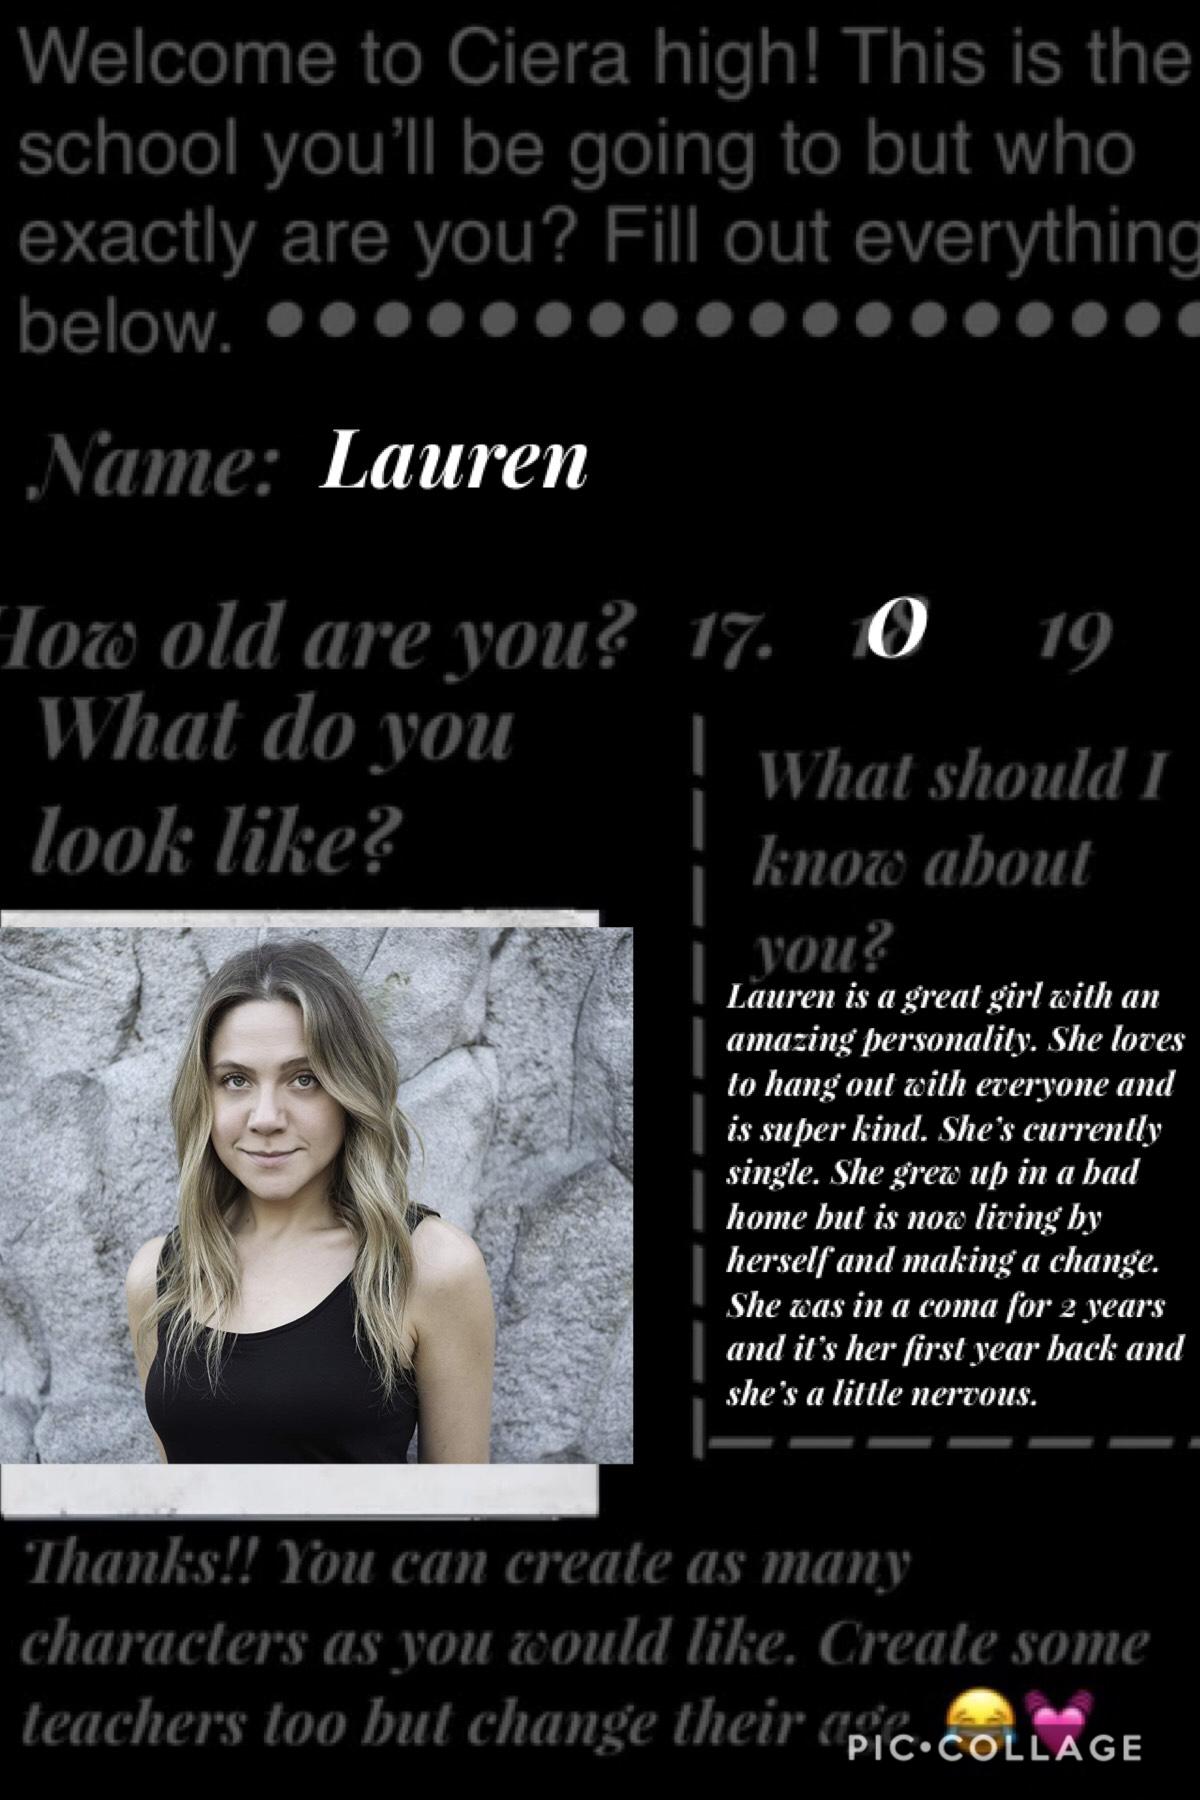 Lauren is one of my characters.